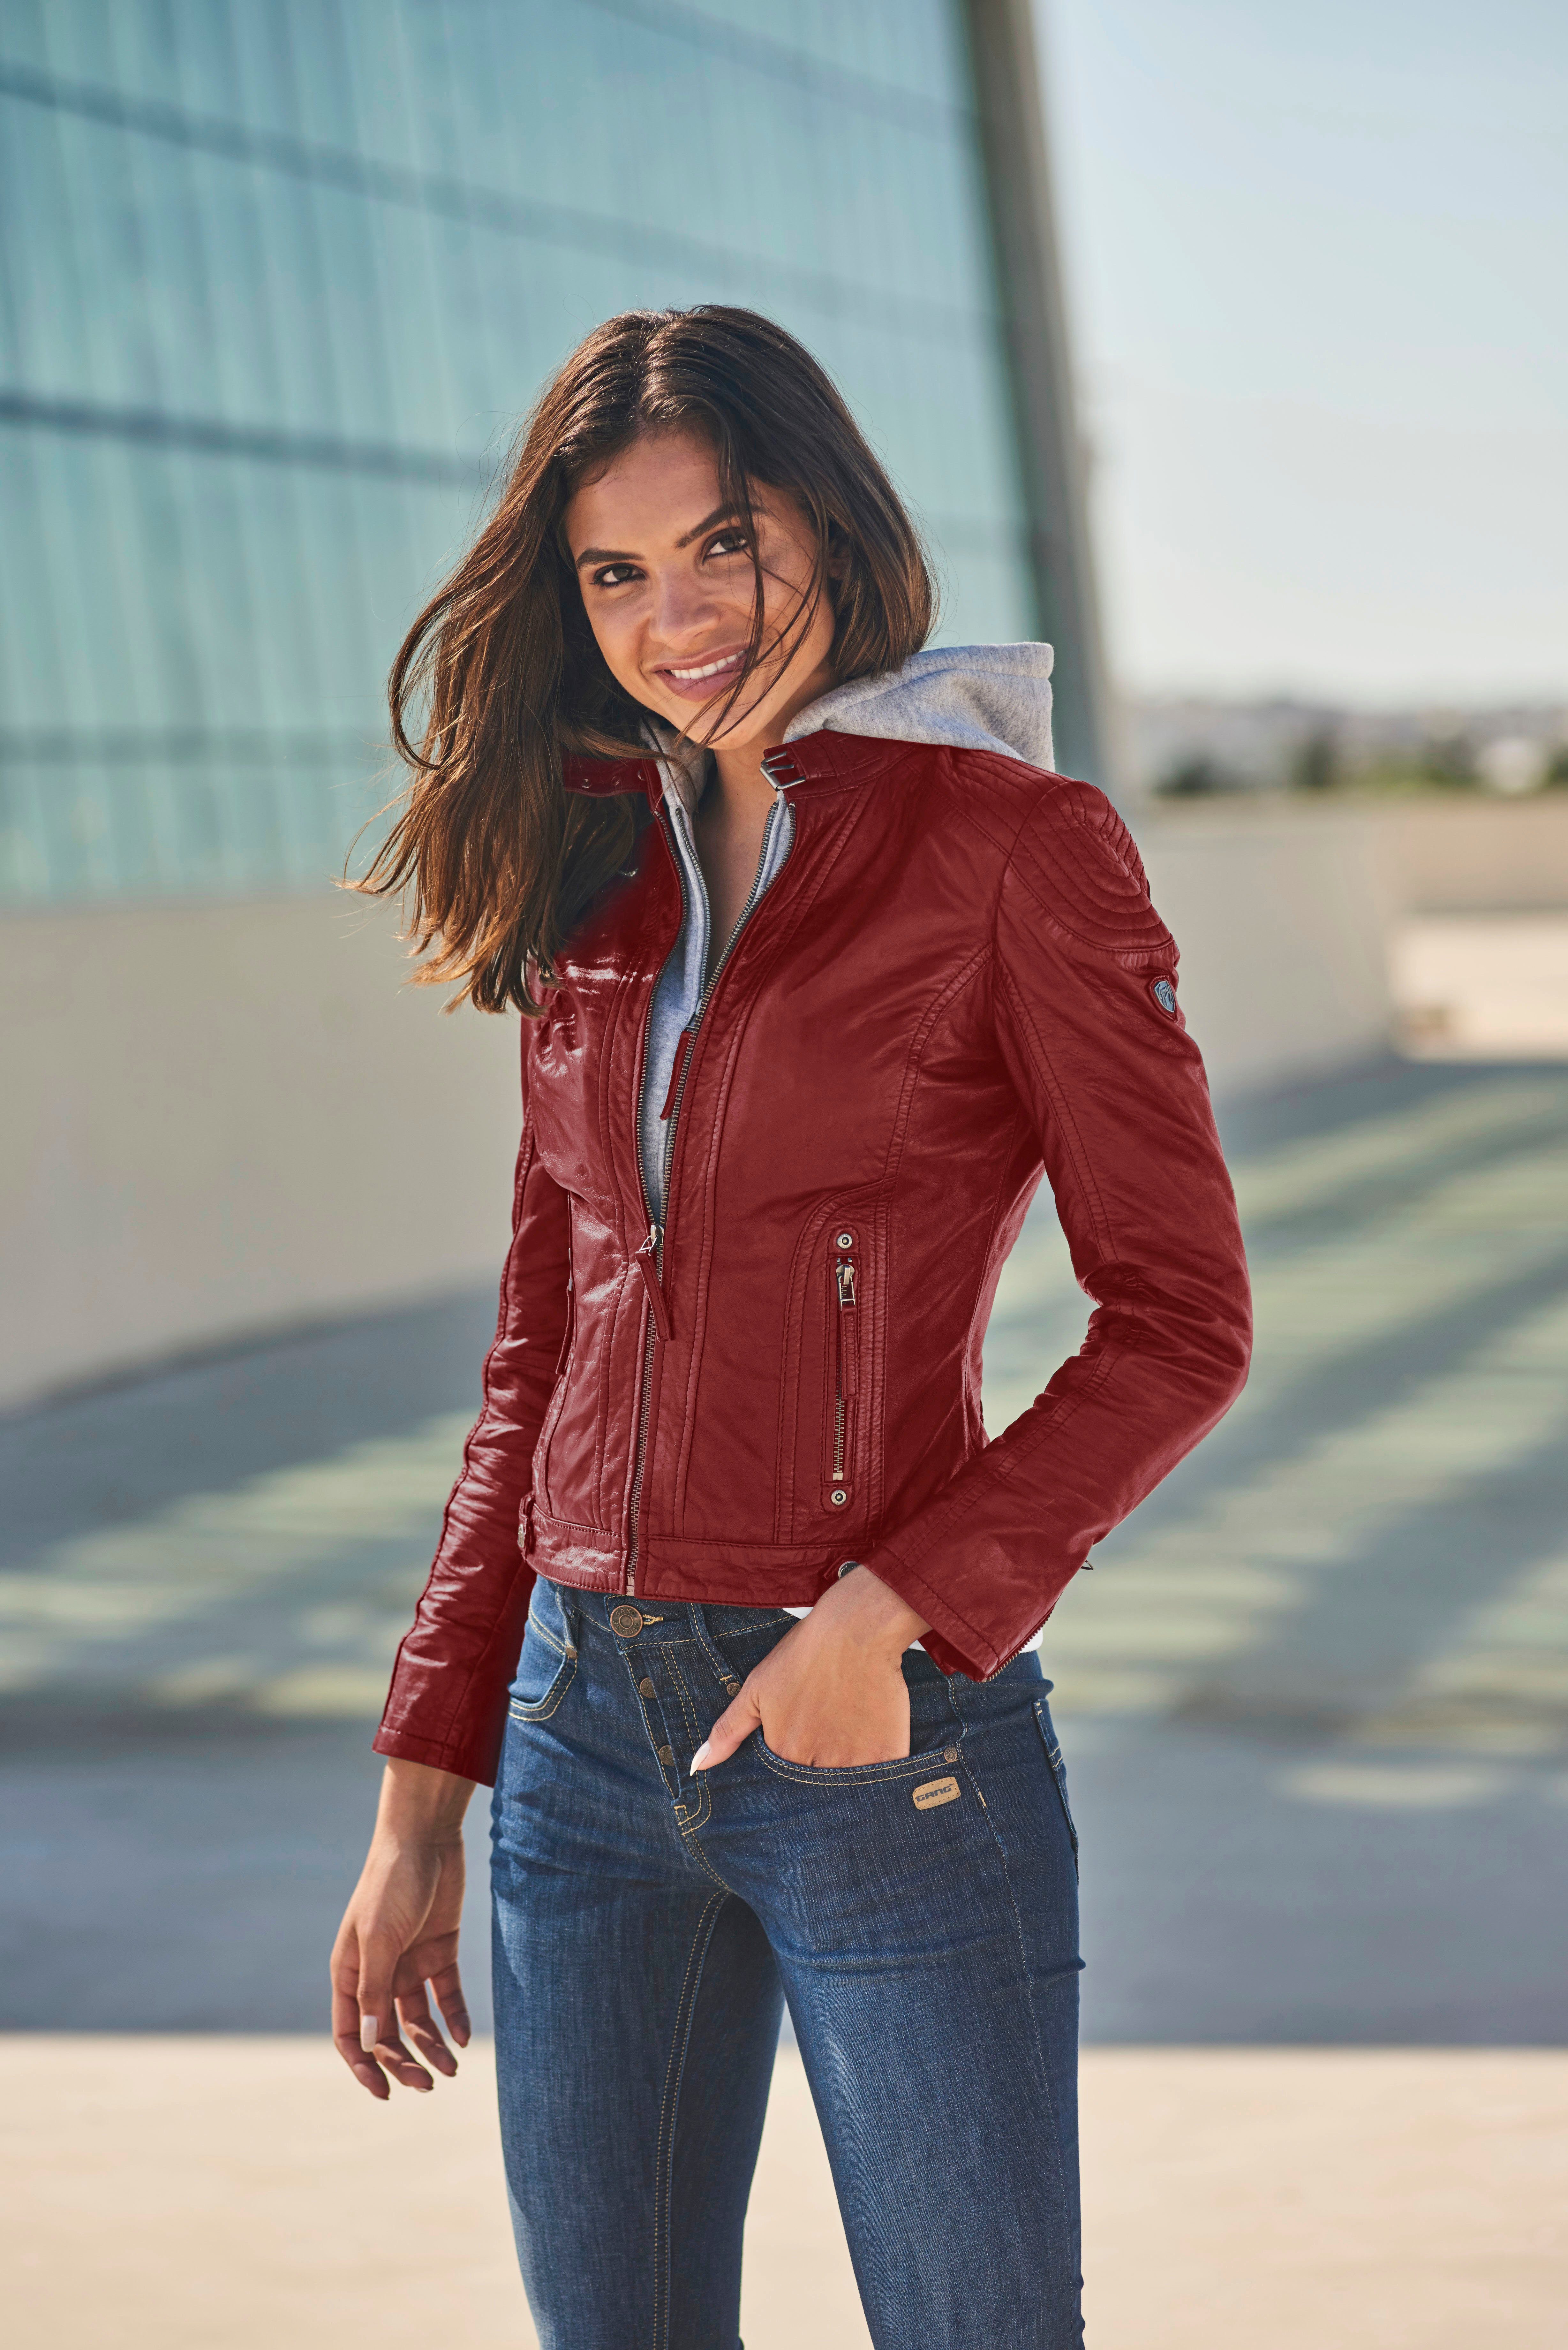 Damen Lederjacke in rot online kaufen | OTTO